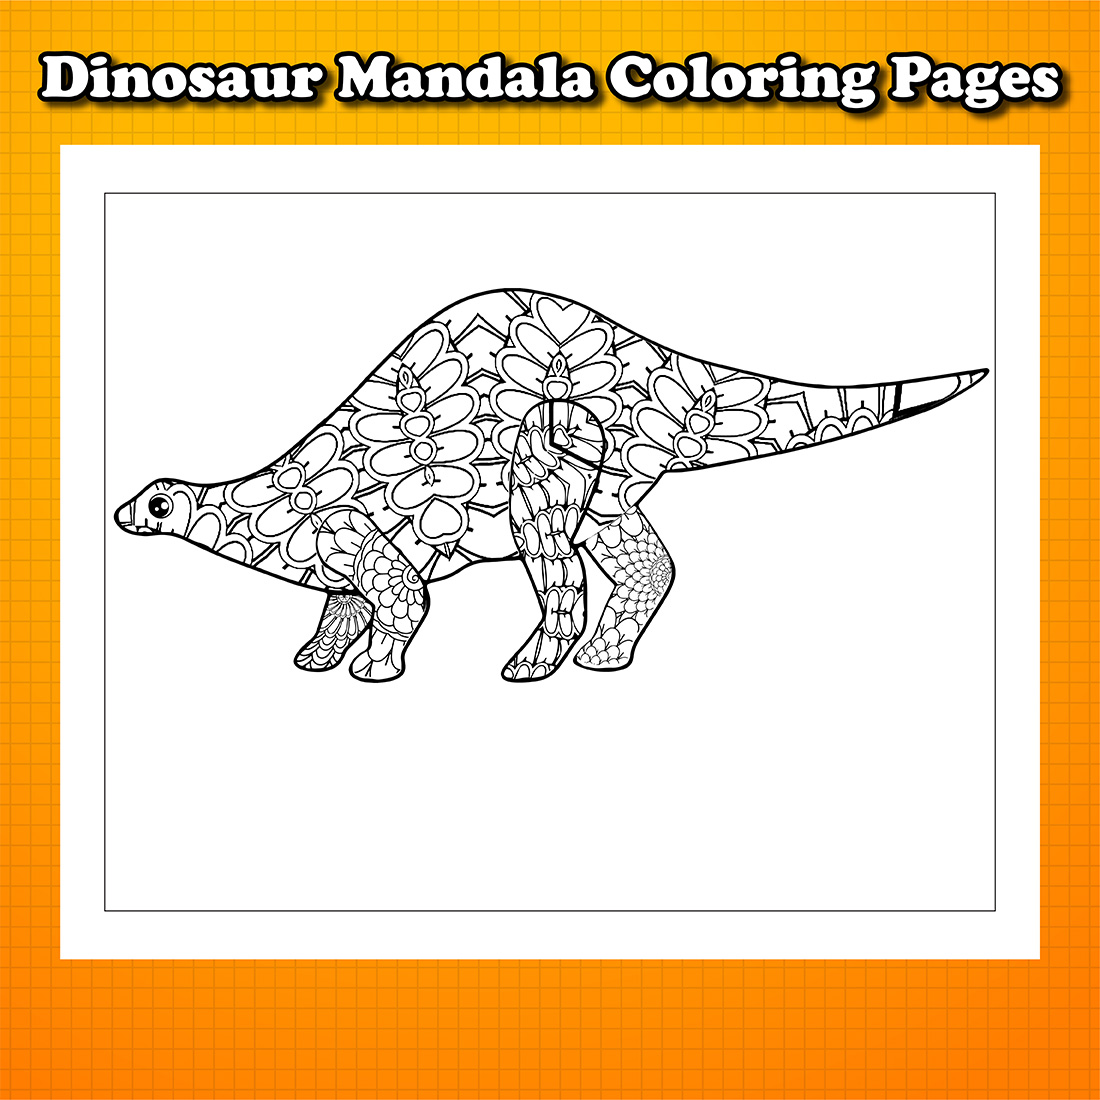 Dinosaur Mandala Coloring Pages.